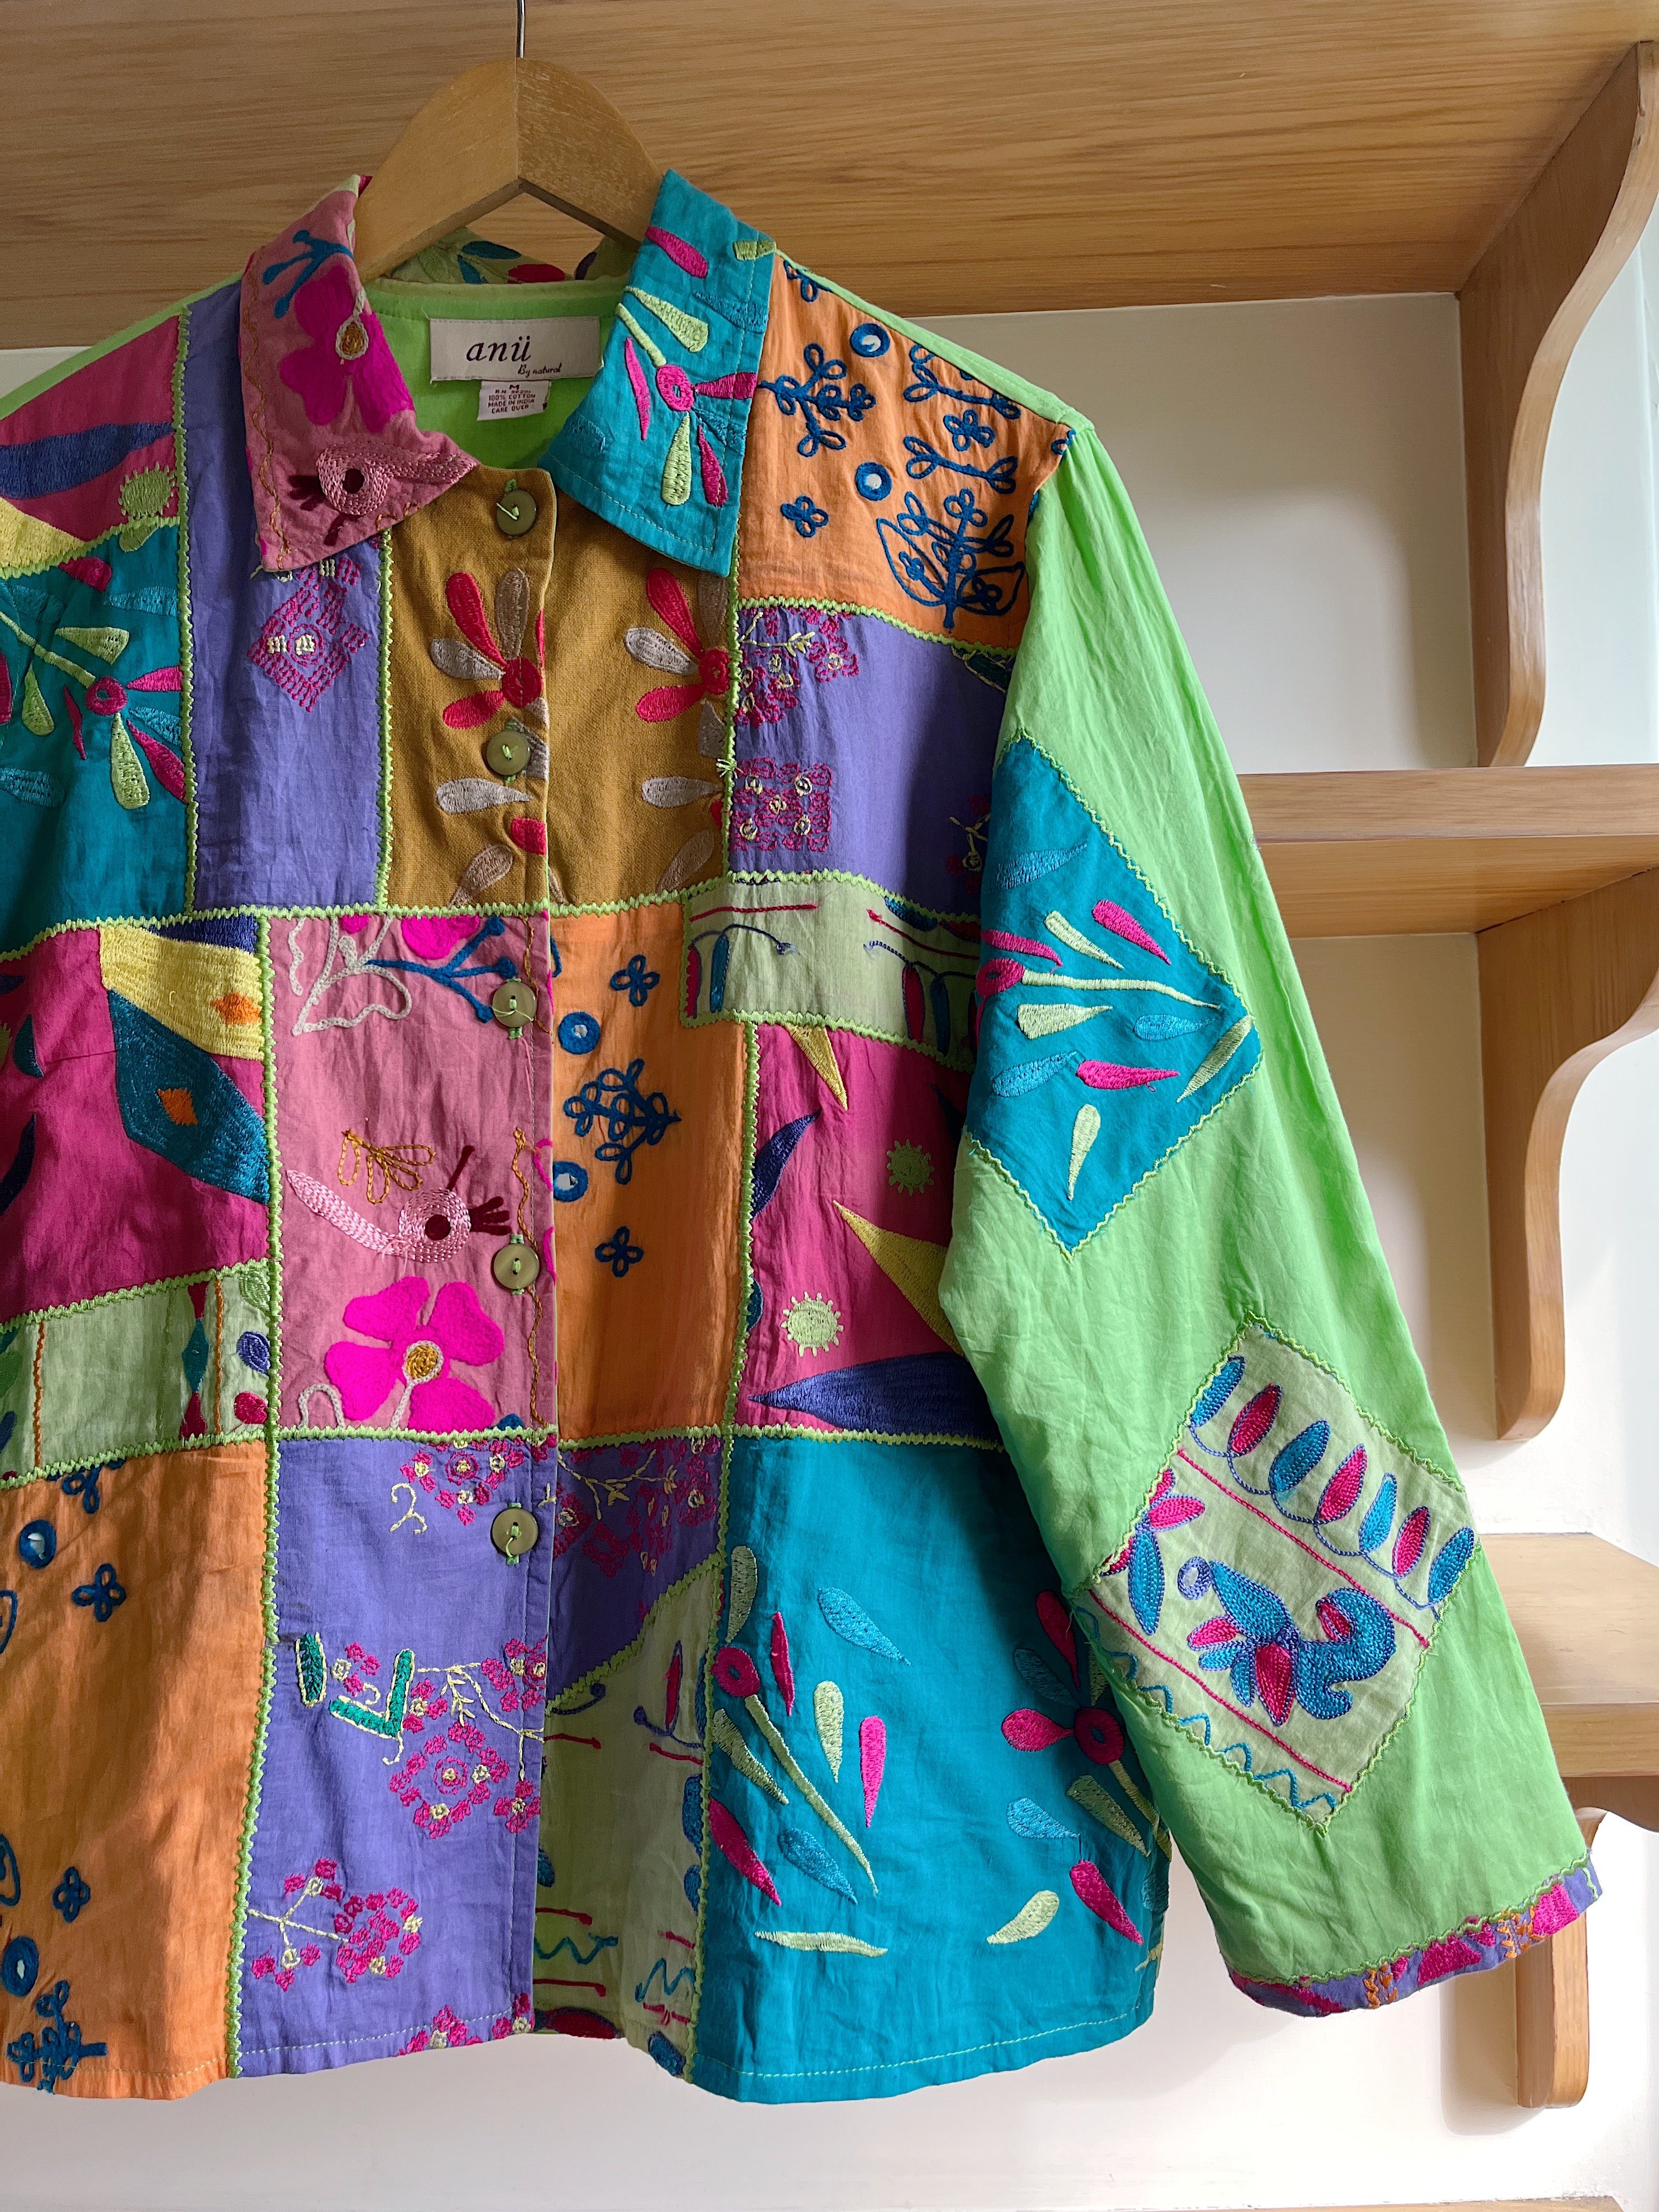 彩红拼色 100%棉质春季手工刺绣外套 一些异域艺术感的元素和撞色